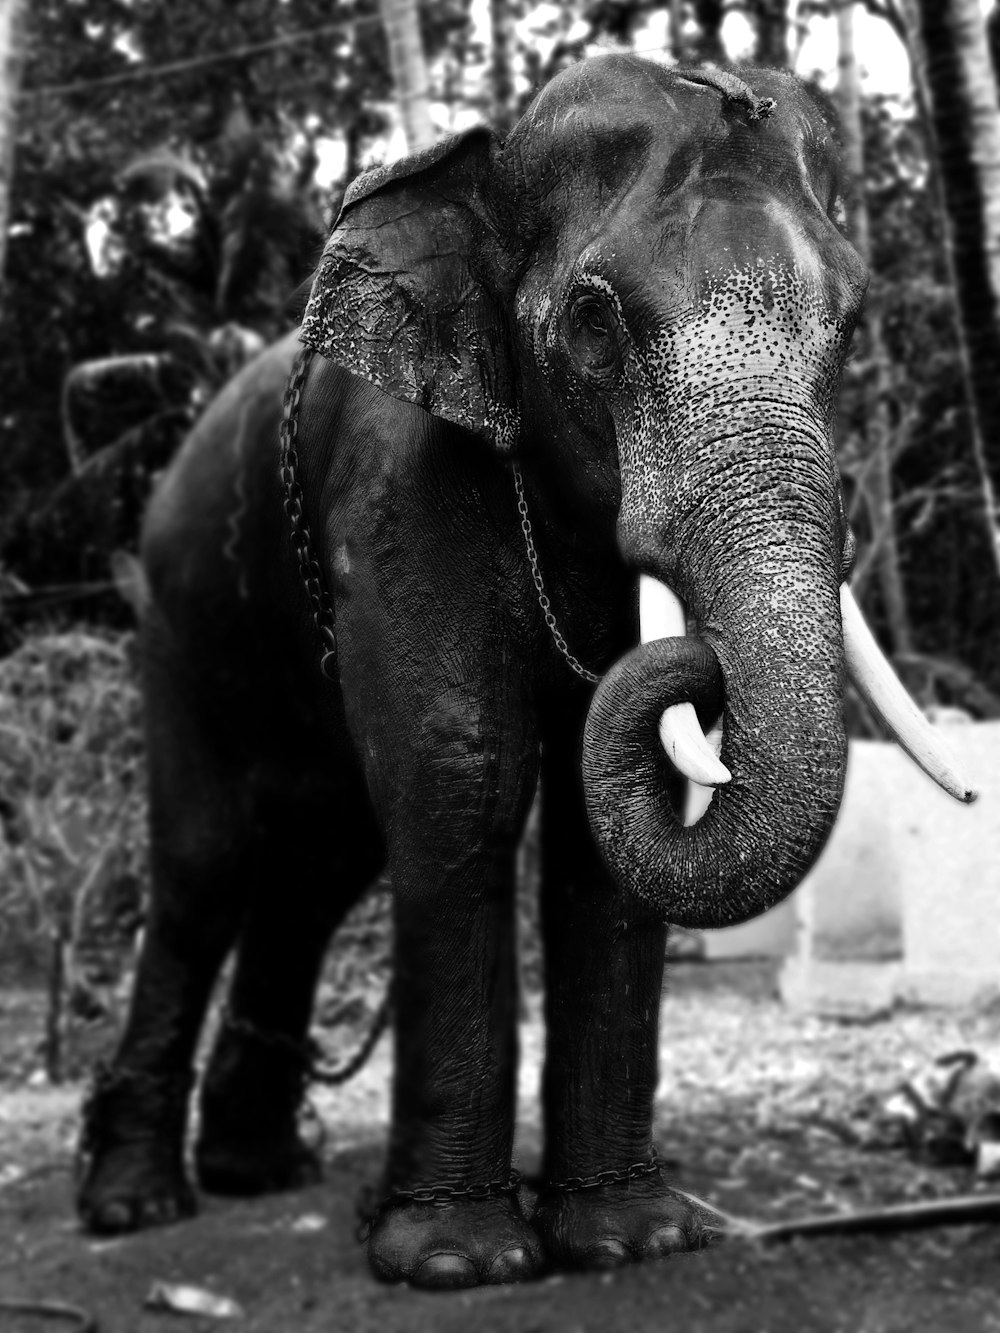 fotografia em tons de cinza de um elefante